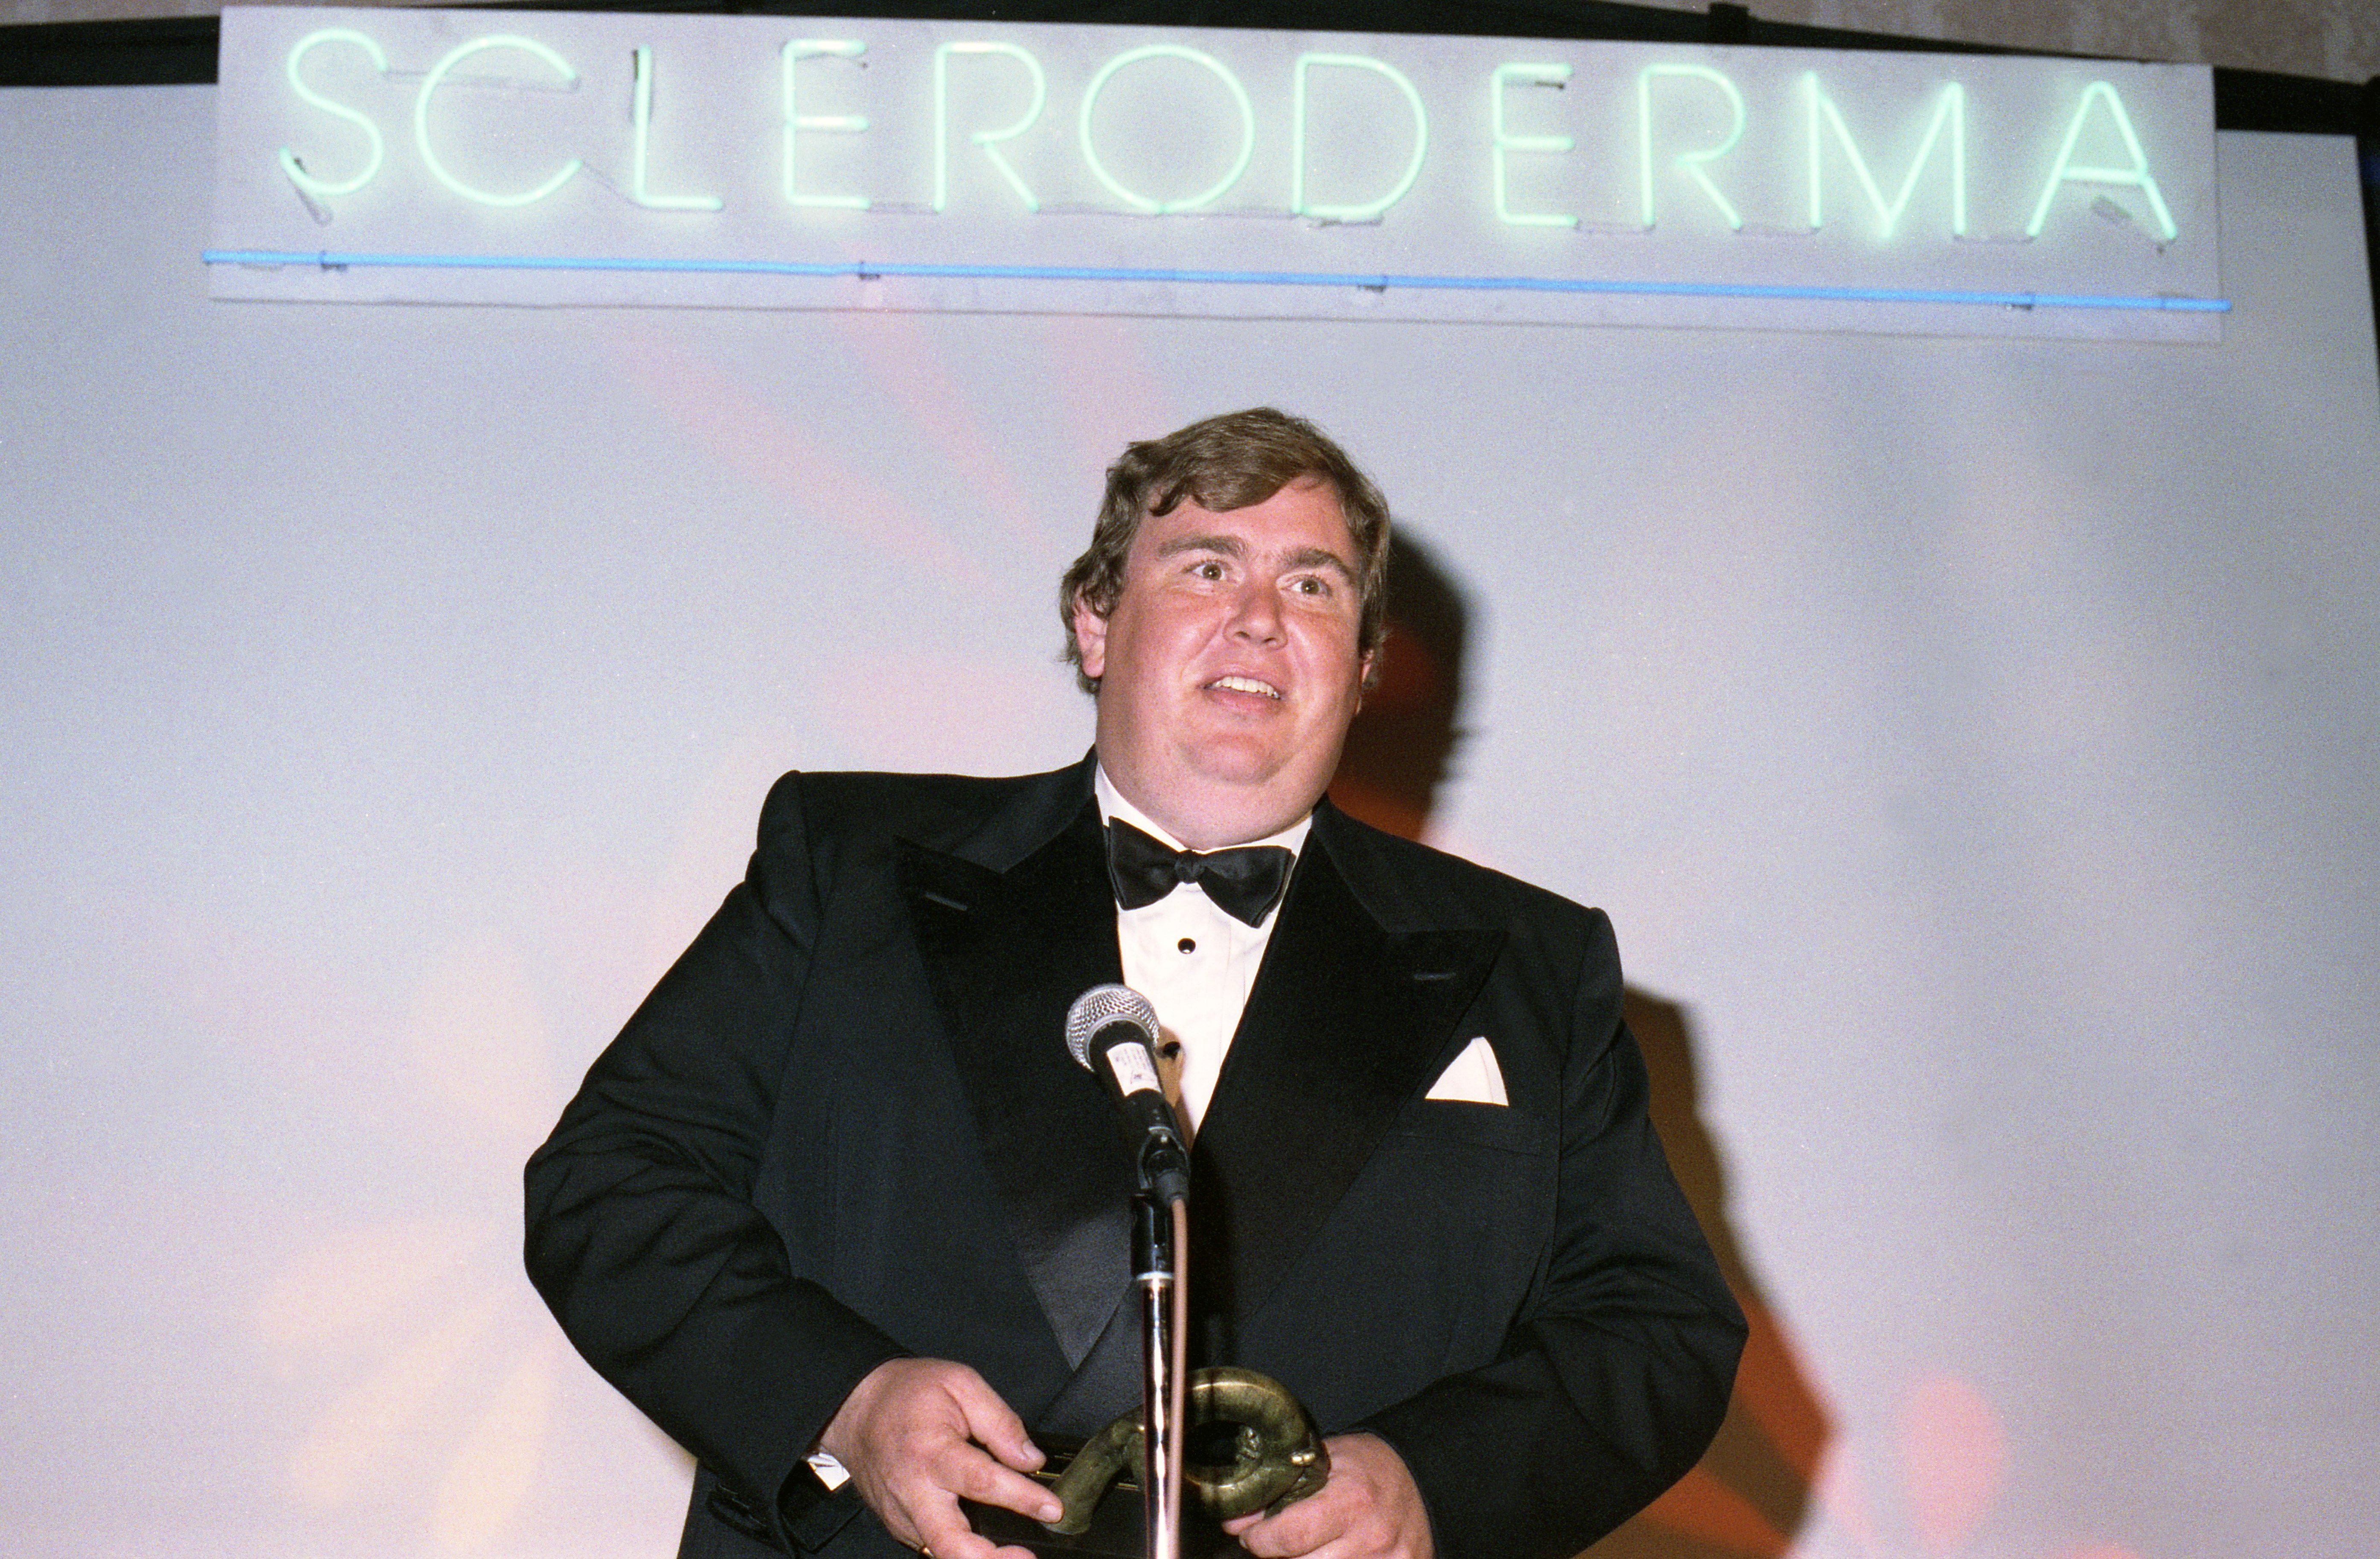 John Candy recevant le prix des fondateurs de la Fondation pour la recherche sur la sclérodermie, le 9 juin 1991, à Santa Monica, en Californie. | Source : Getty Images